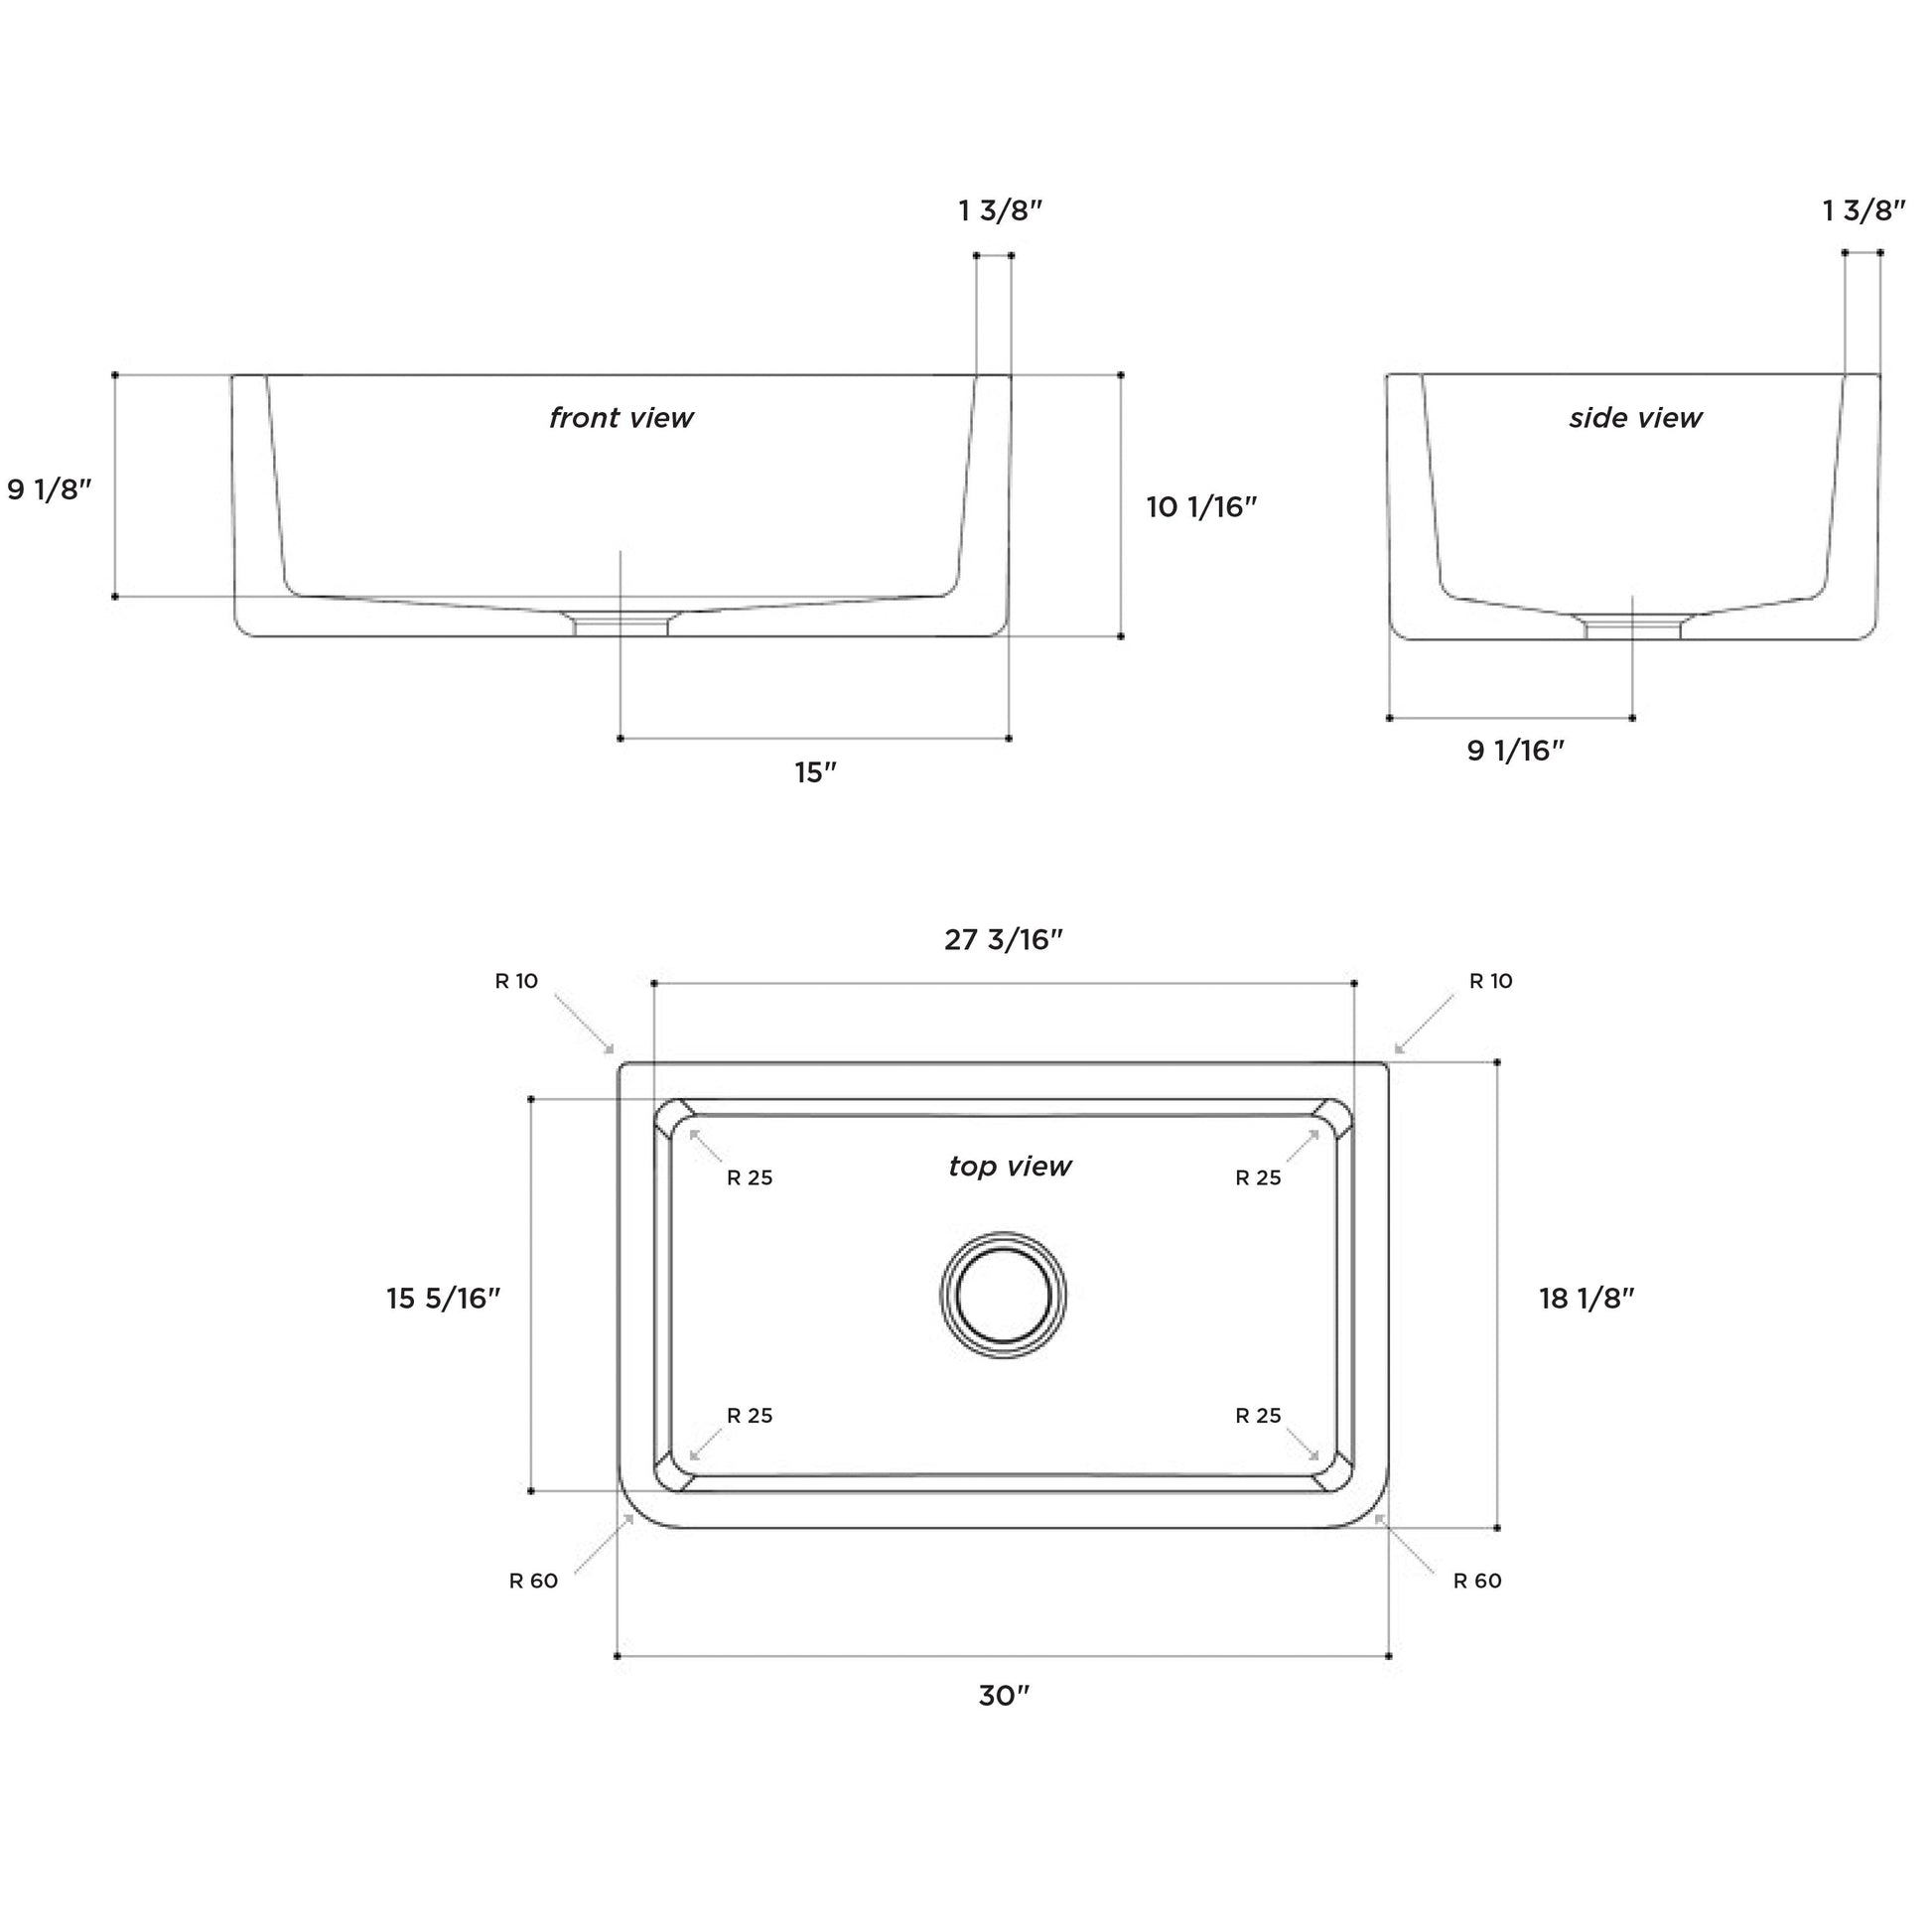 LaToscana 30" x 18" White Single Bowl Farmhouse Apron-Front Reversible Fireclay Rectangular Kitchen Sink